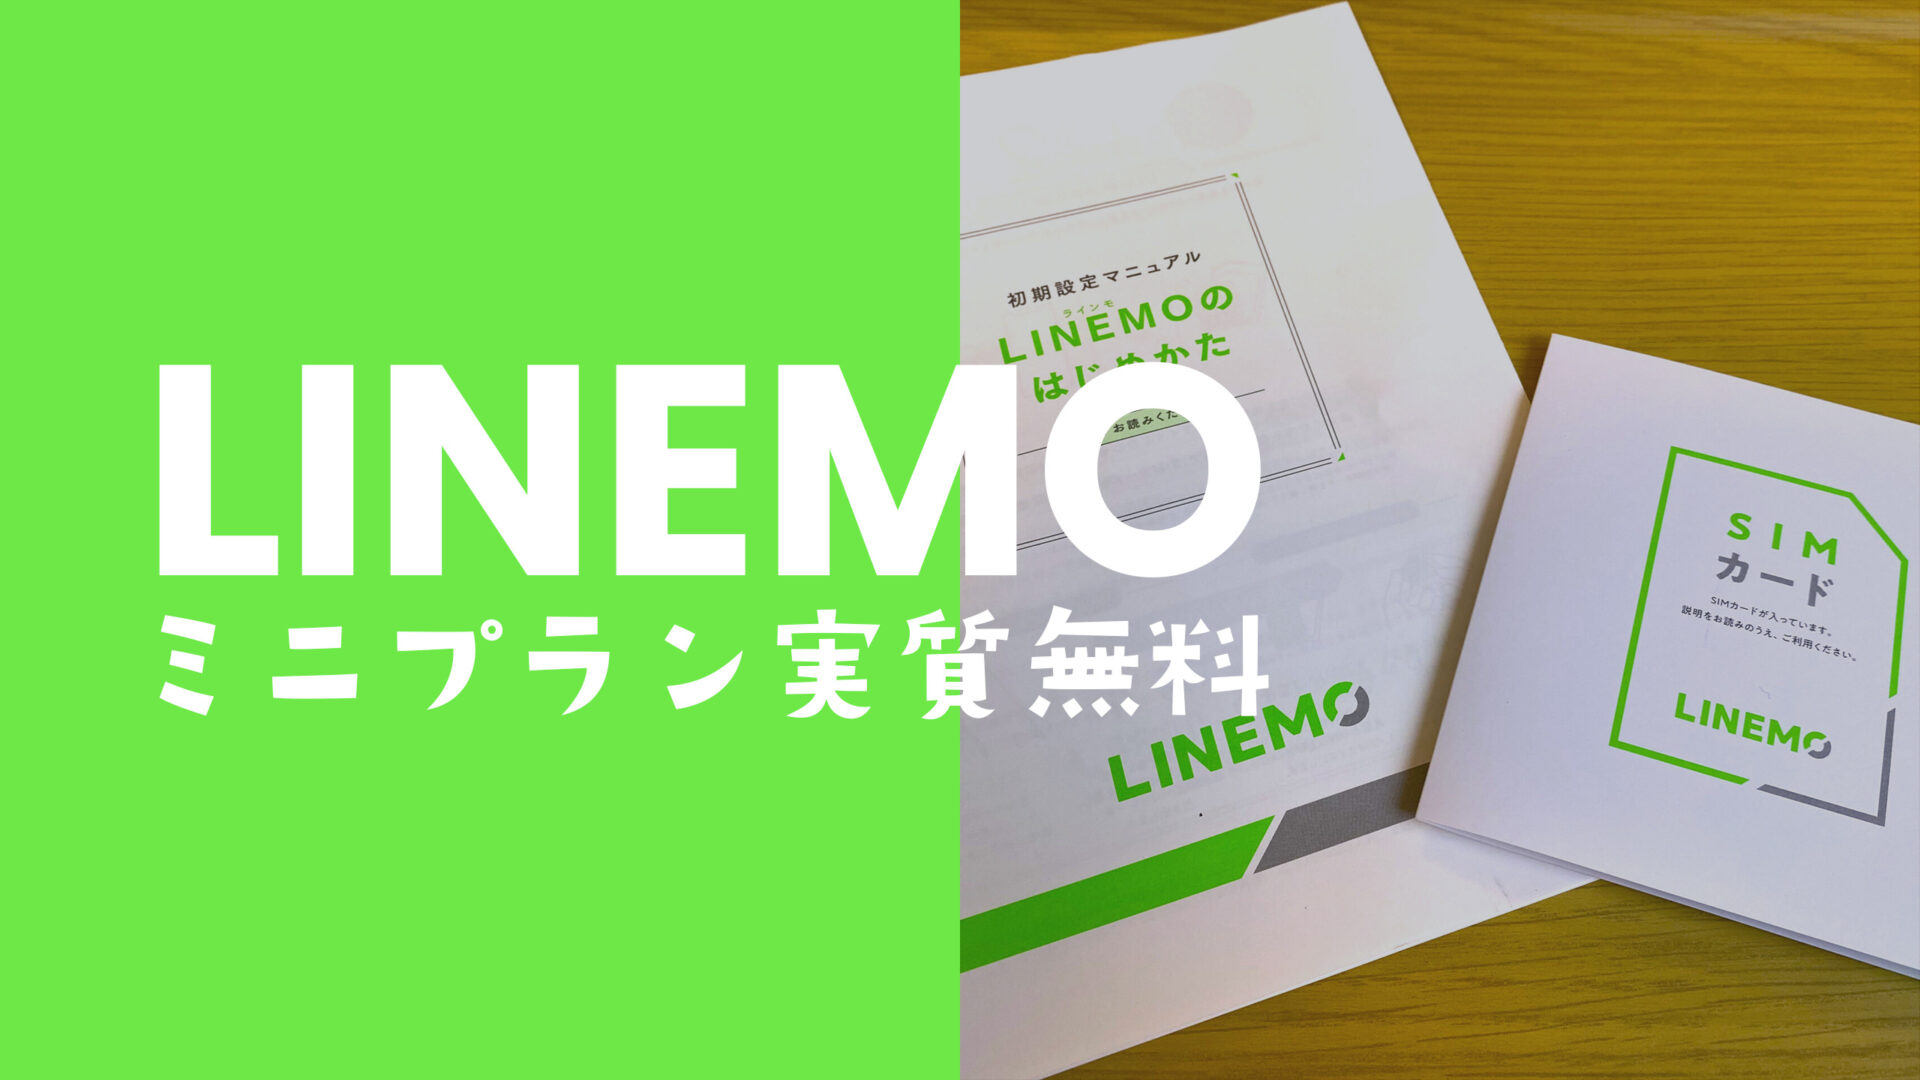 LINEMO(ラインモ)ミニプランの12ヶ月(1年間)実質無料キャンペーンはいつまで開催？のサムネイル画像